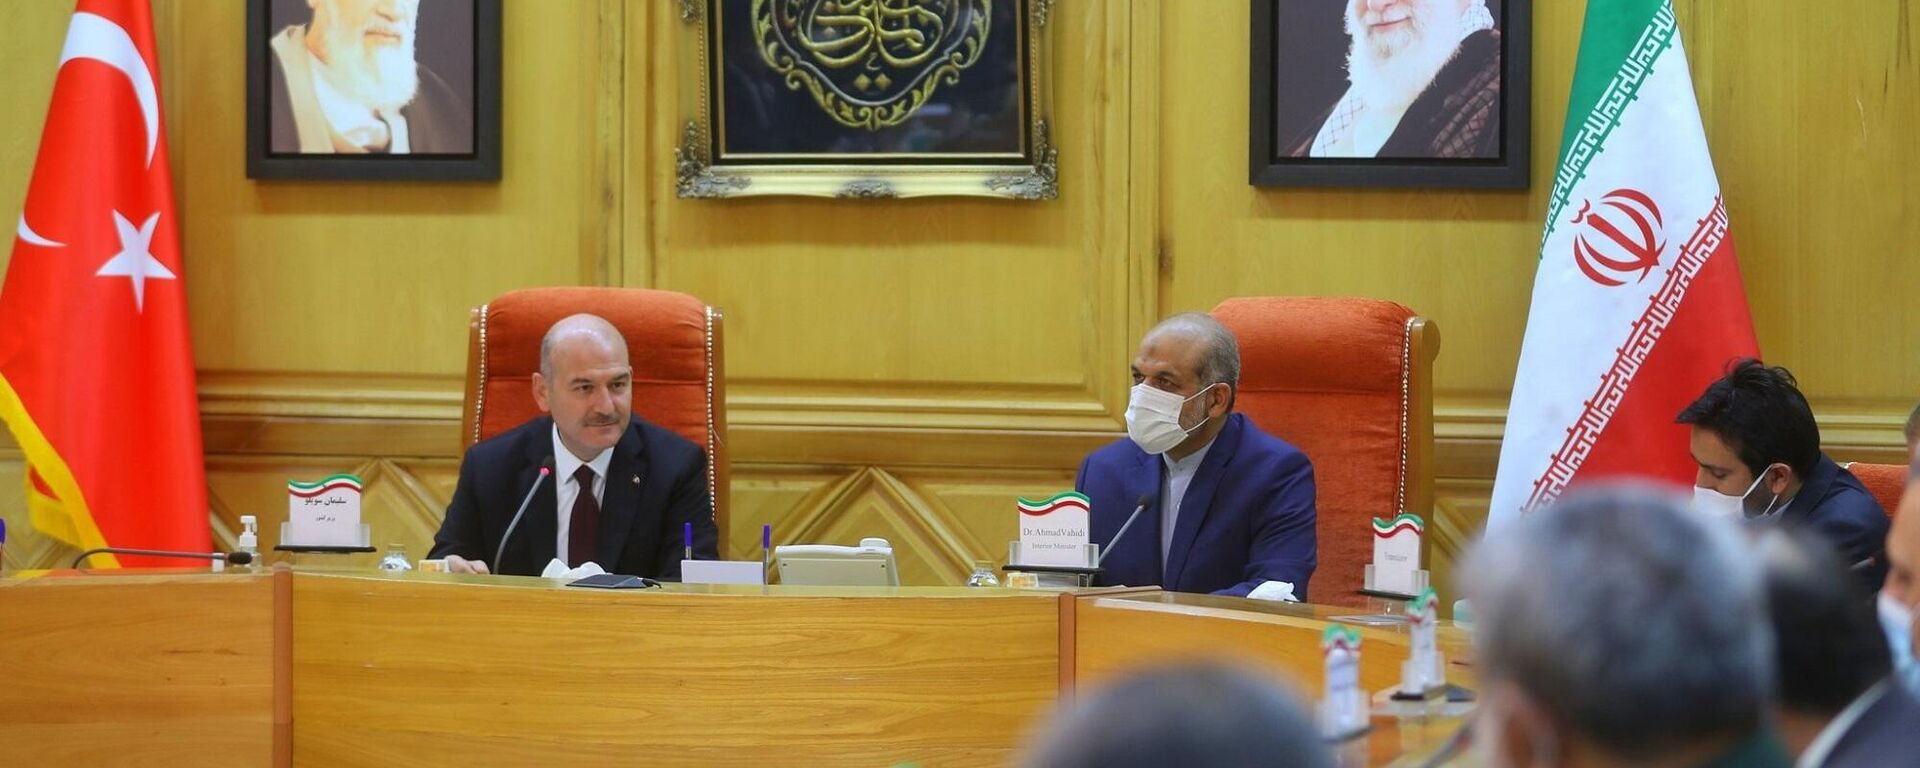 İçişleri Bakanı Süleyman Soylu, İran’ın başkenti Tahran’da İran İçişleri Bakanı Ahmed Vahidi ile ikili ve heyetler arası görüşme gerçekleştirdi. - Sputnik Türkiye, 1920, 21.10.2021